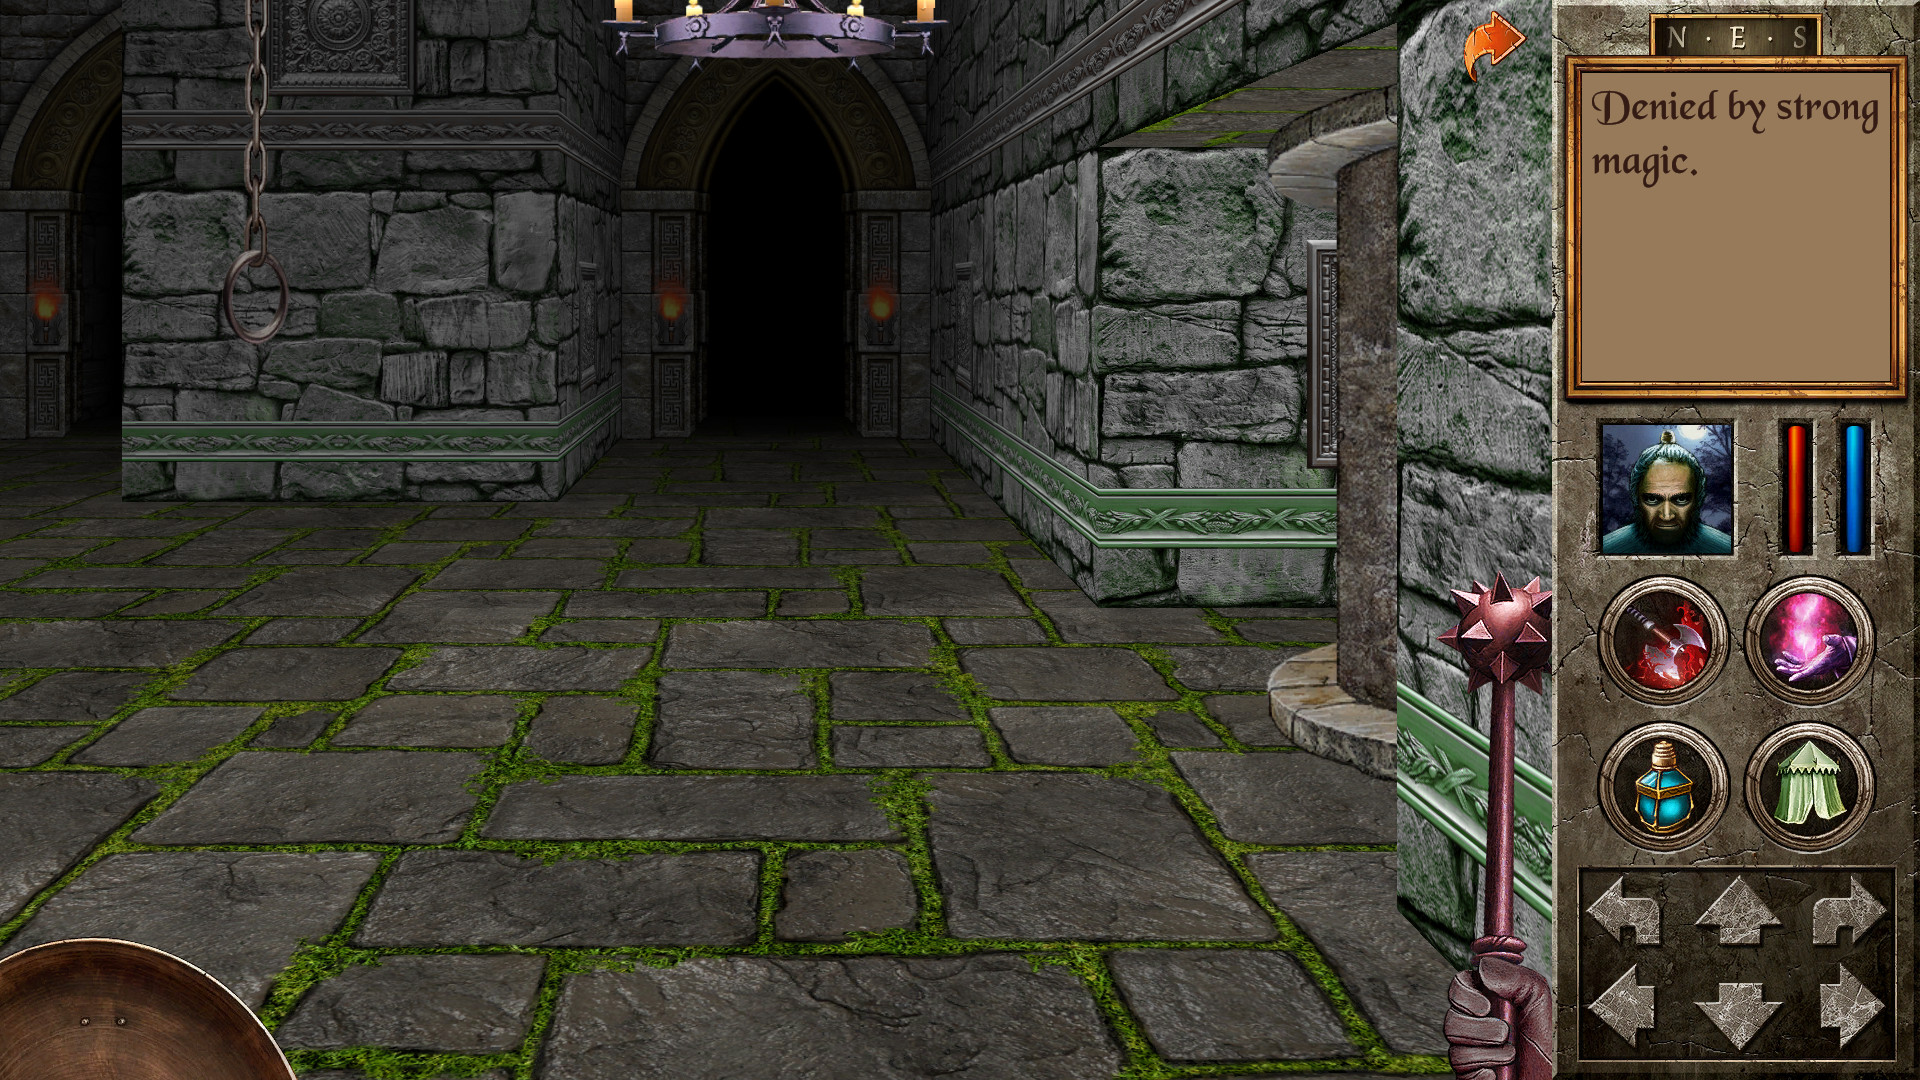 Игры похожие на игру quest. The Quest игра Redshift. Quest 2006. Quest игра 2000. The Quest (2006 Video game).